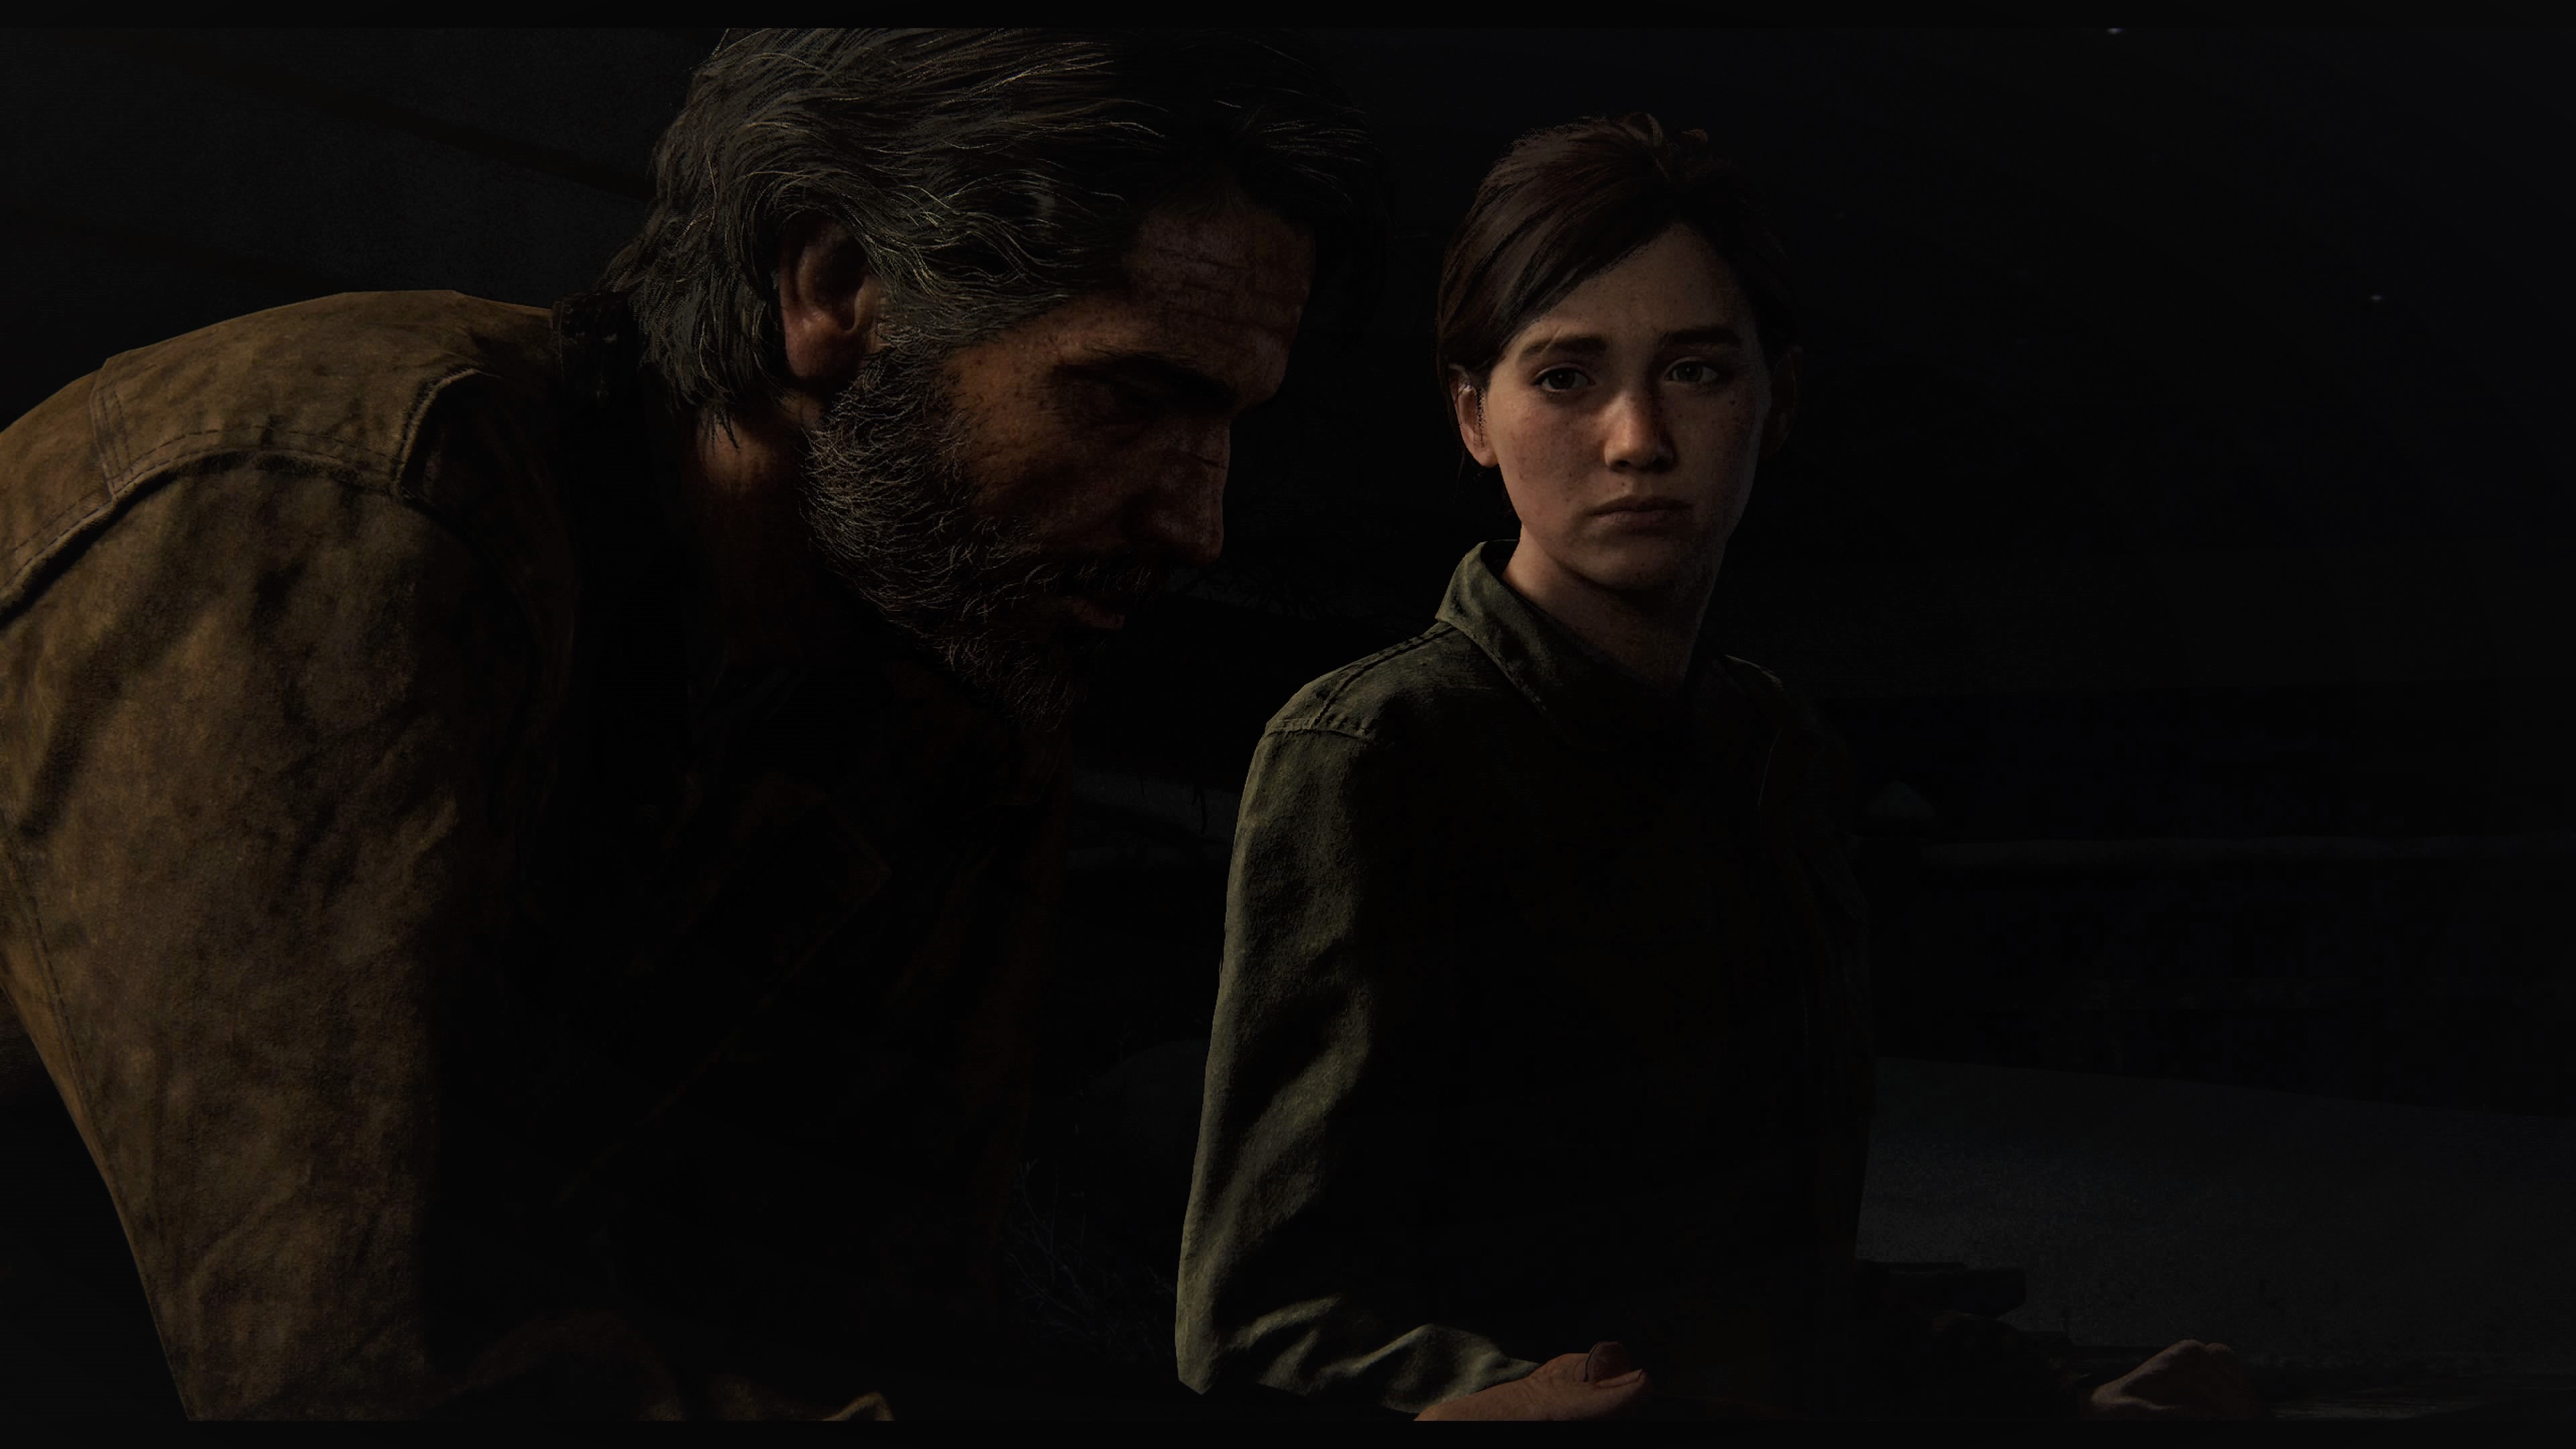 Wallpaper : The Last of Us, The Last of Us 2, Ellie Williams, Joel Miller,  video games, video game characters 1920x1080 - Heroine2000 - 2100229 - HD  Wallpapers - WallHere